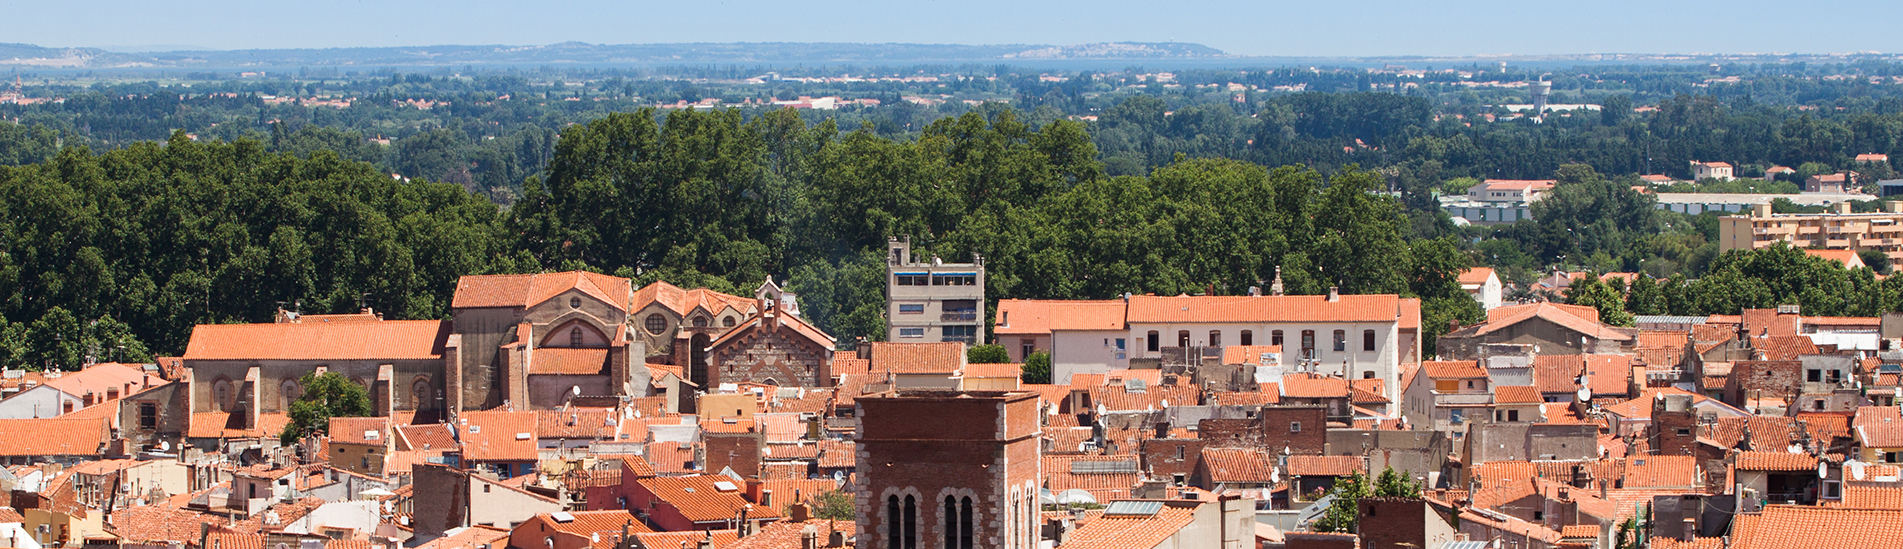 Vue aérienne de la vieille ville de Perpignan avec des toits en tuiles et le clocher d'une église.